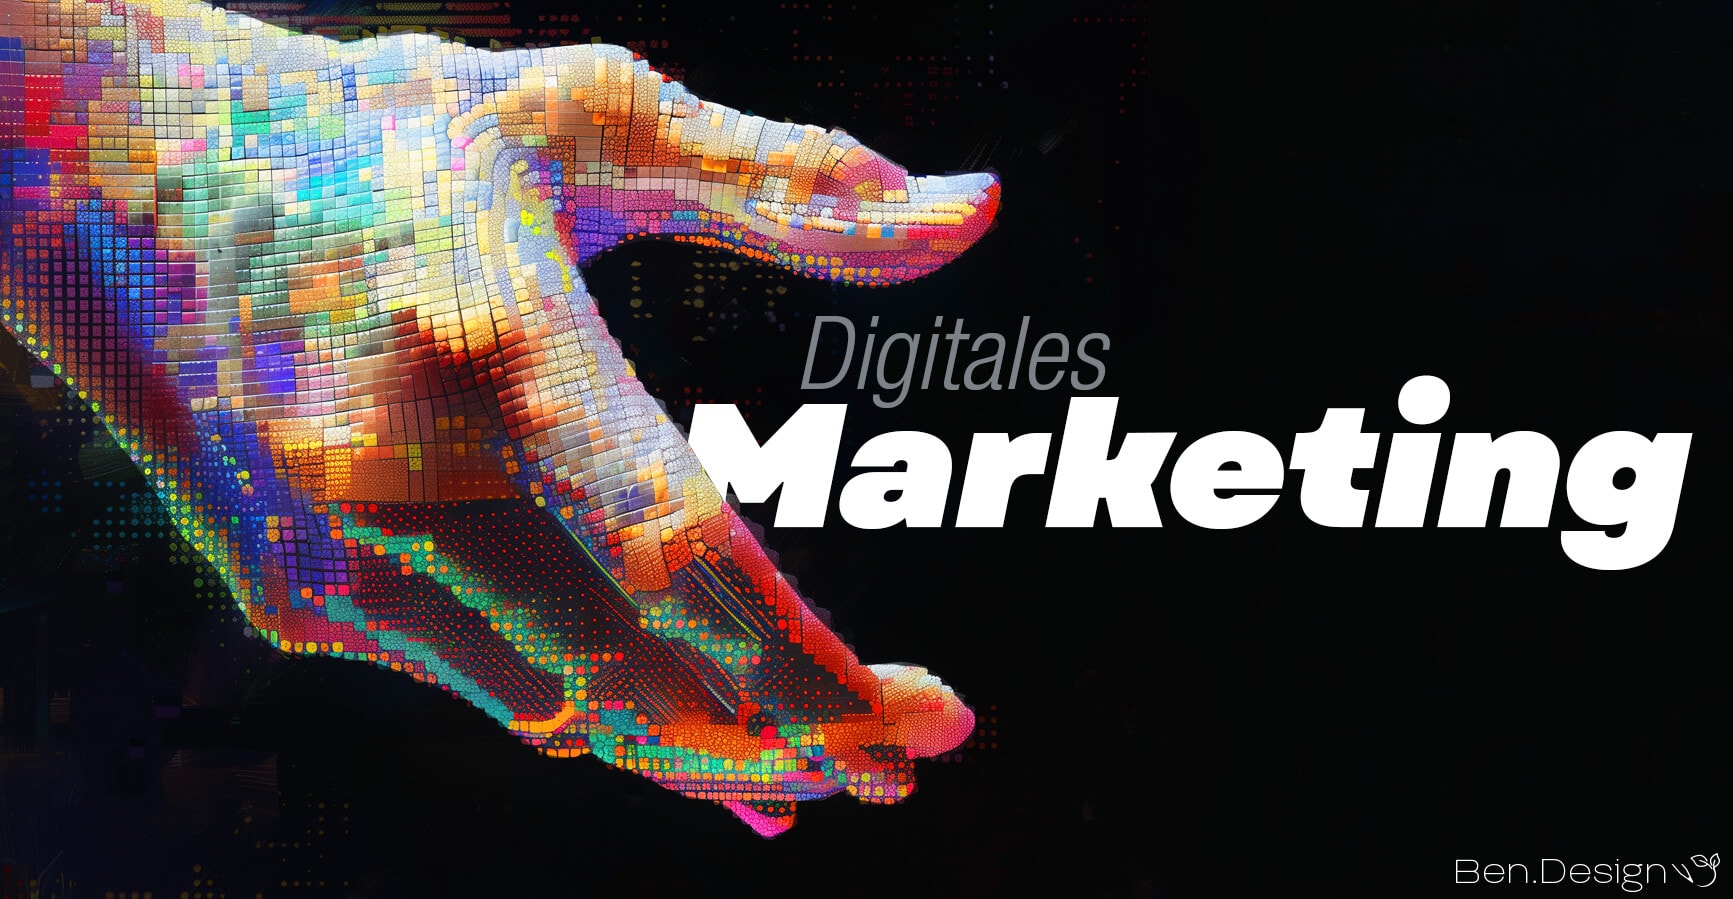 Eine Vielzahl bunter Pixel bildet zusammengenommen eine Hand und greift vor dunkelblauem Hintergrund nach den Wörtern „digitales Marketing“.